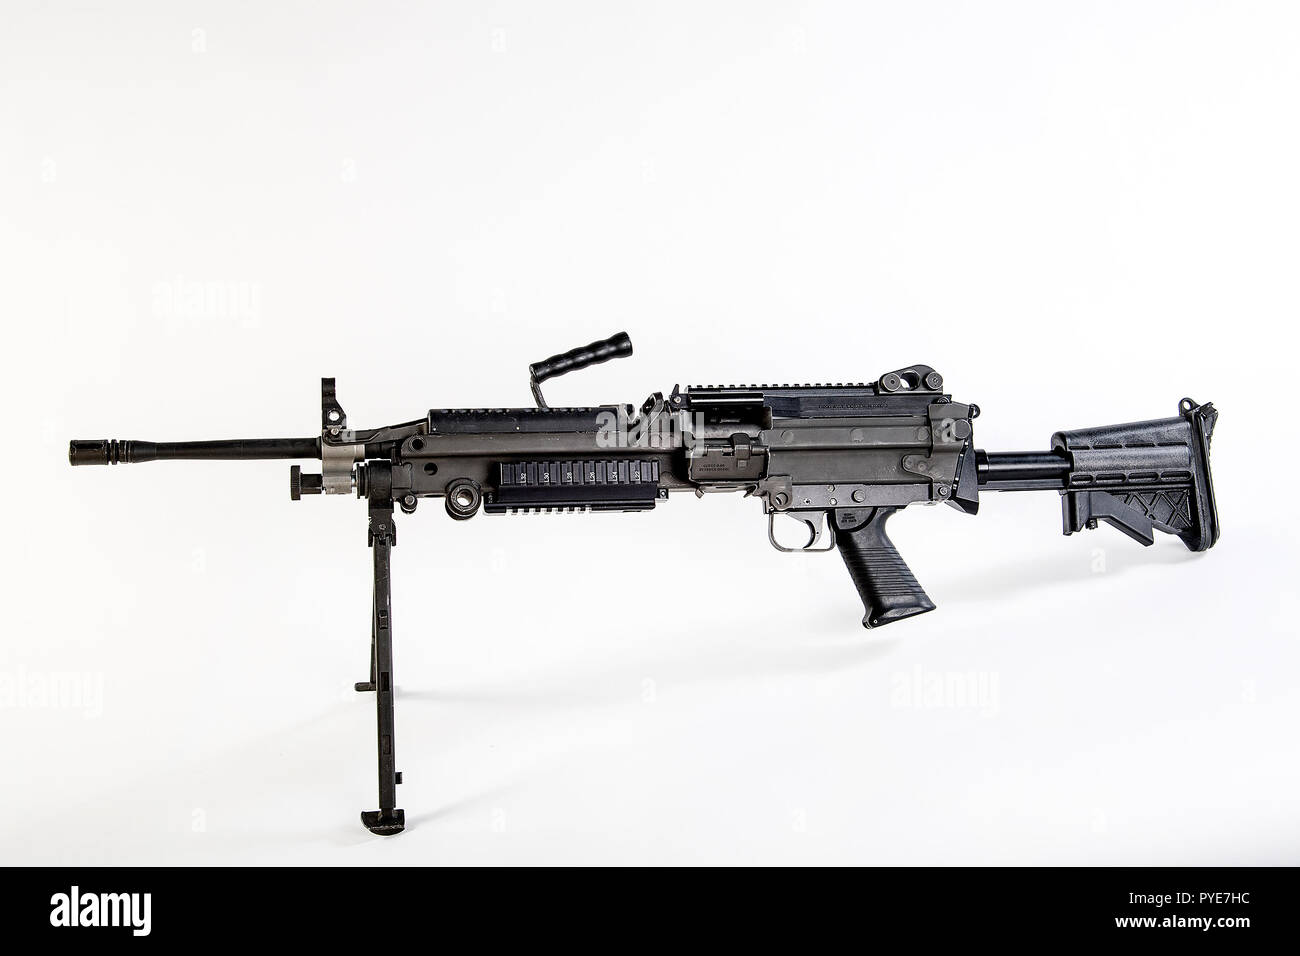 Le M249 light machine gun, auparavant désigné le M249 Squad arme automatique (VU) et officiellement écrit comme Mitrailleuse légère, 5,56 mm, M249, est l'adaptation américaine de la Minimi FN belge, une mitrailleuse légère fabriqués par l'entreprise belge FN Herstal (FN). L'arme a été introduit en 1984 après avoir été jugé le plus efficace des armes un certain nombre de candidats pour combler le manque de puissance de feu automatique en petites unités. Le M249 fournit des escouades d'infanterie avec le taux élevé de feu d'une mitrailleuse combiné avec exactitude et la portabilité qui se rapproche de celui d'un fusil. Le M249 est le gaz o Banque D'Images